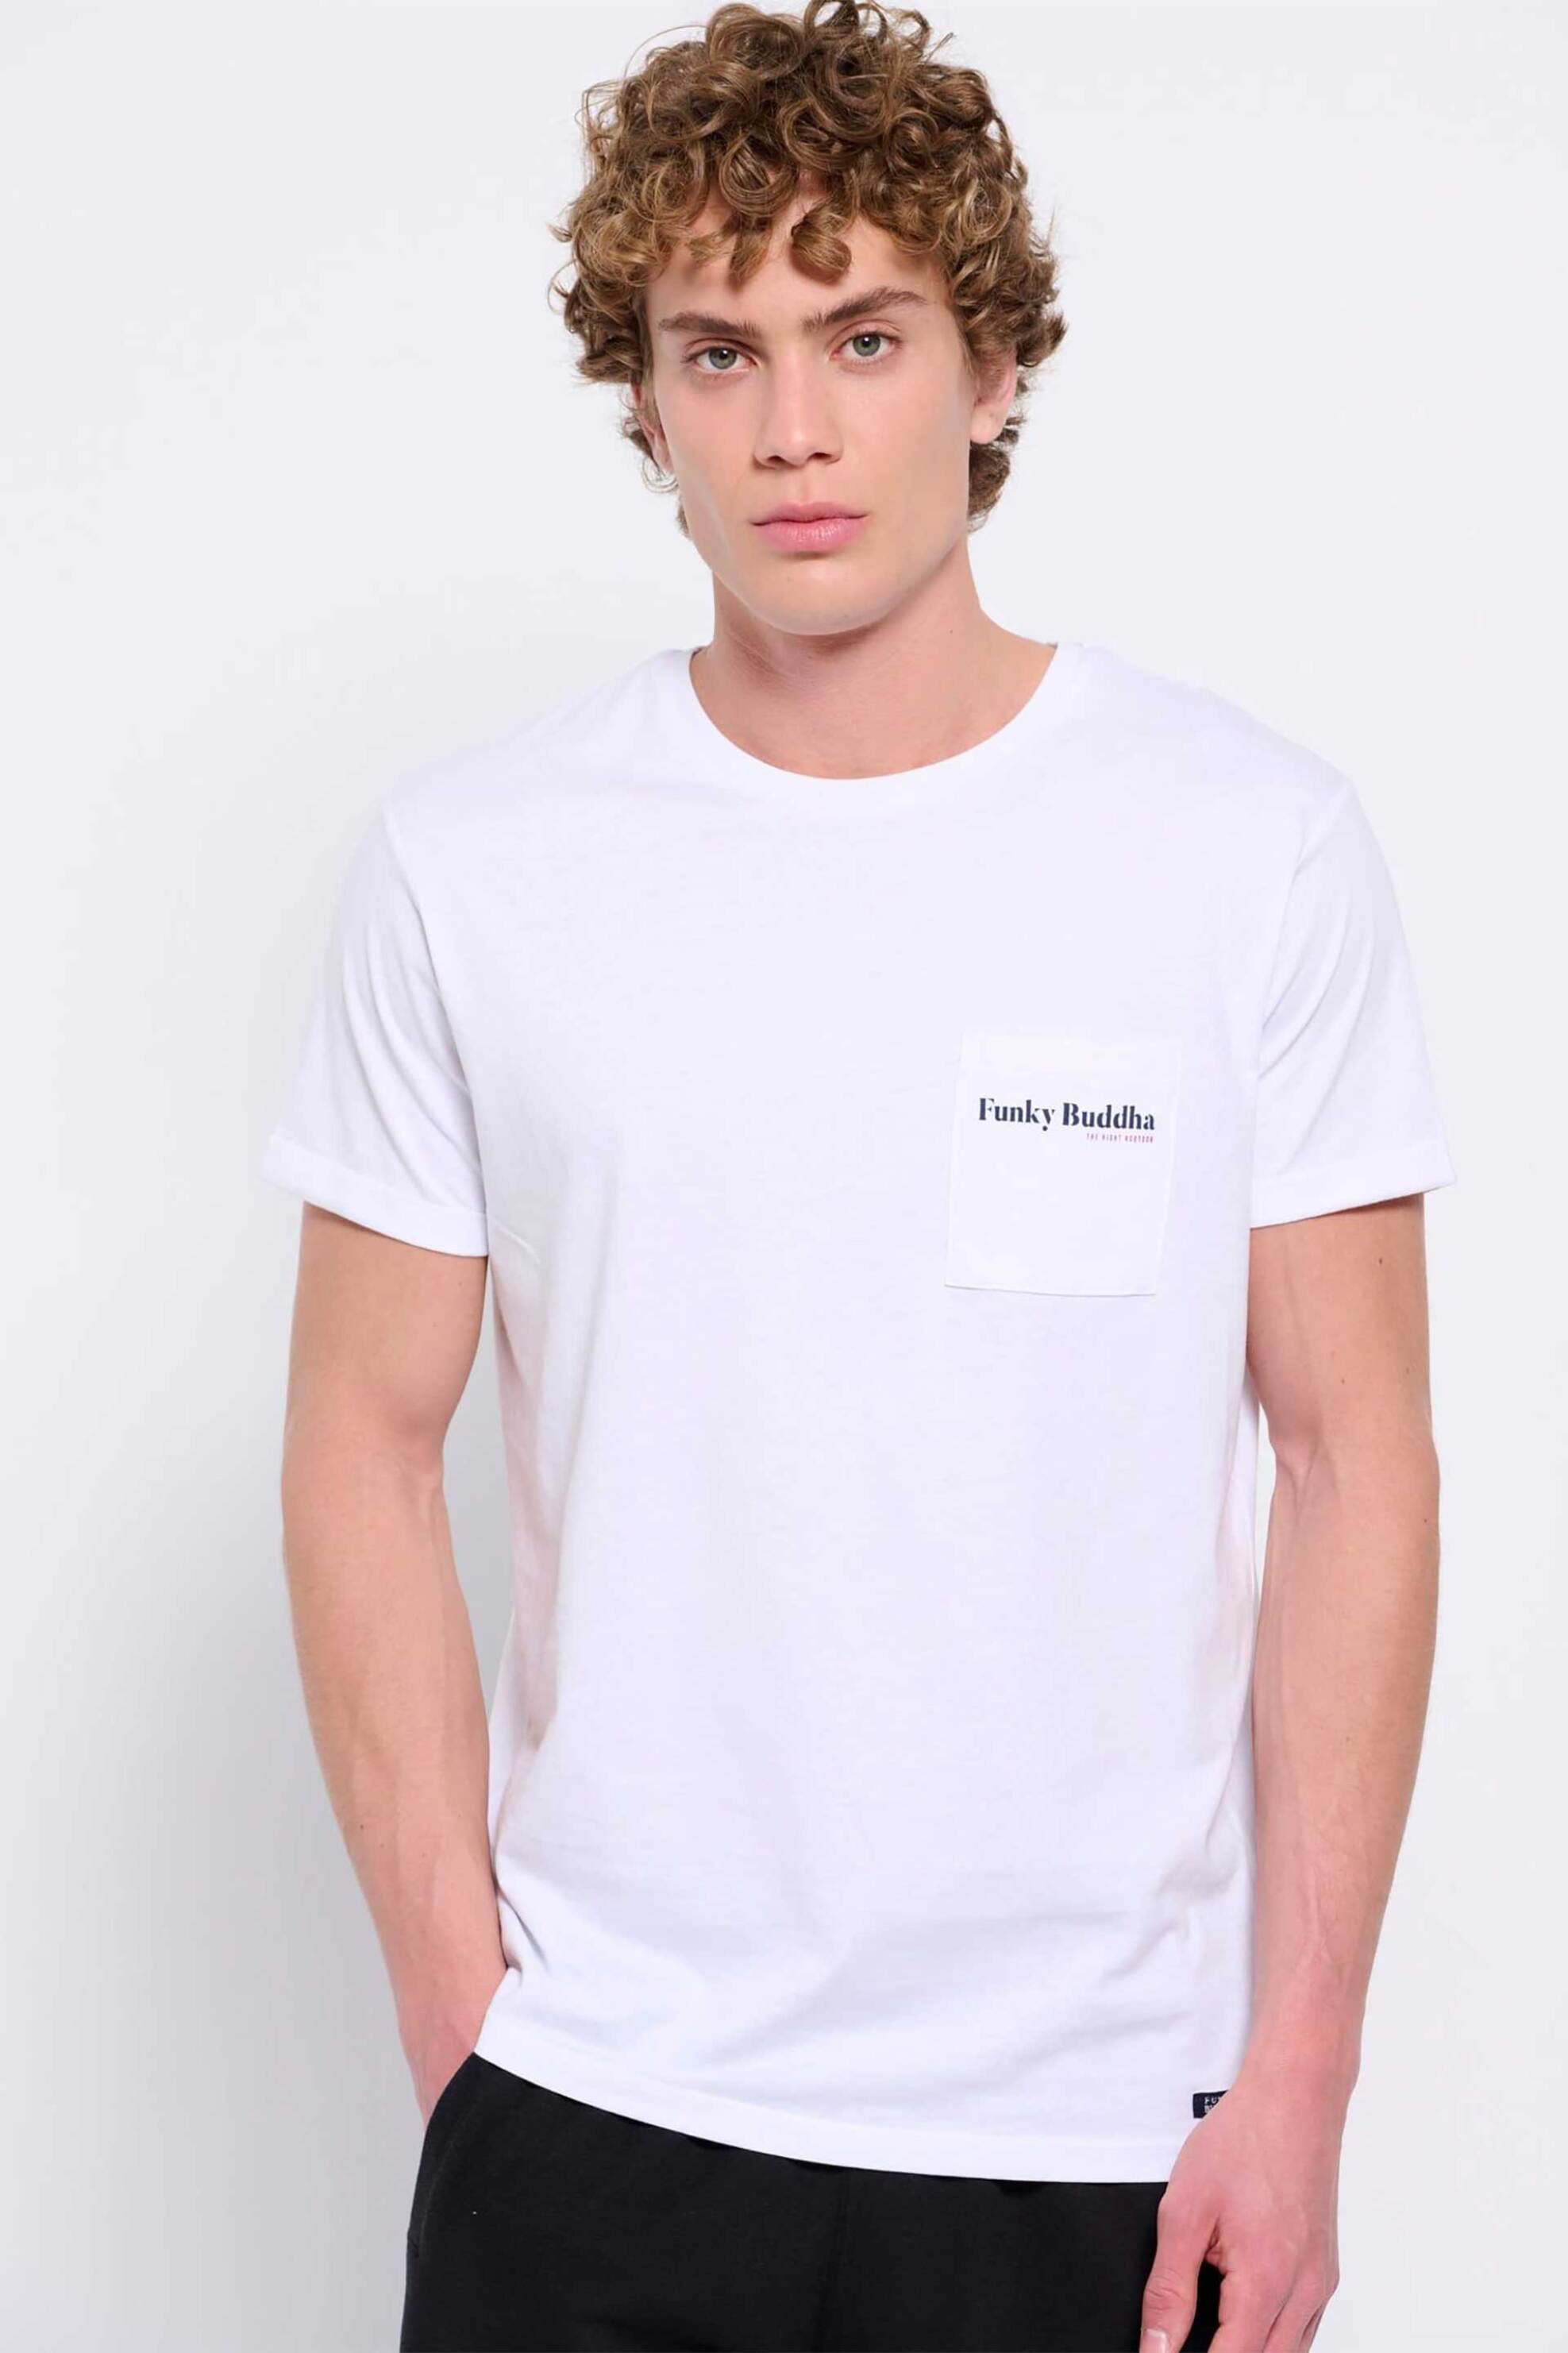 Ανδρική Μόδα > Ανδρικά Ρούχα > Ανδρικές Μπλούζες > Ανδρικά T-Shirts Funky Buddha ανδρικό βαμβακερό T-shirt μονόχρωμο με τσέπη slip και contrast logo print - FBM007-011-04 Λευκό